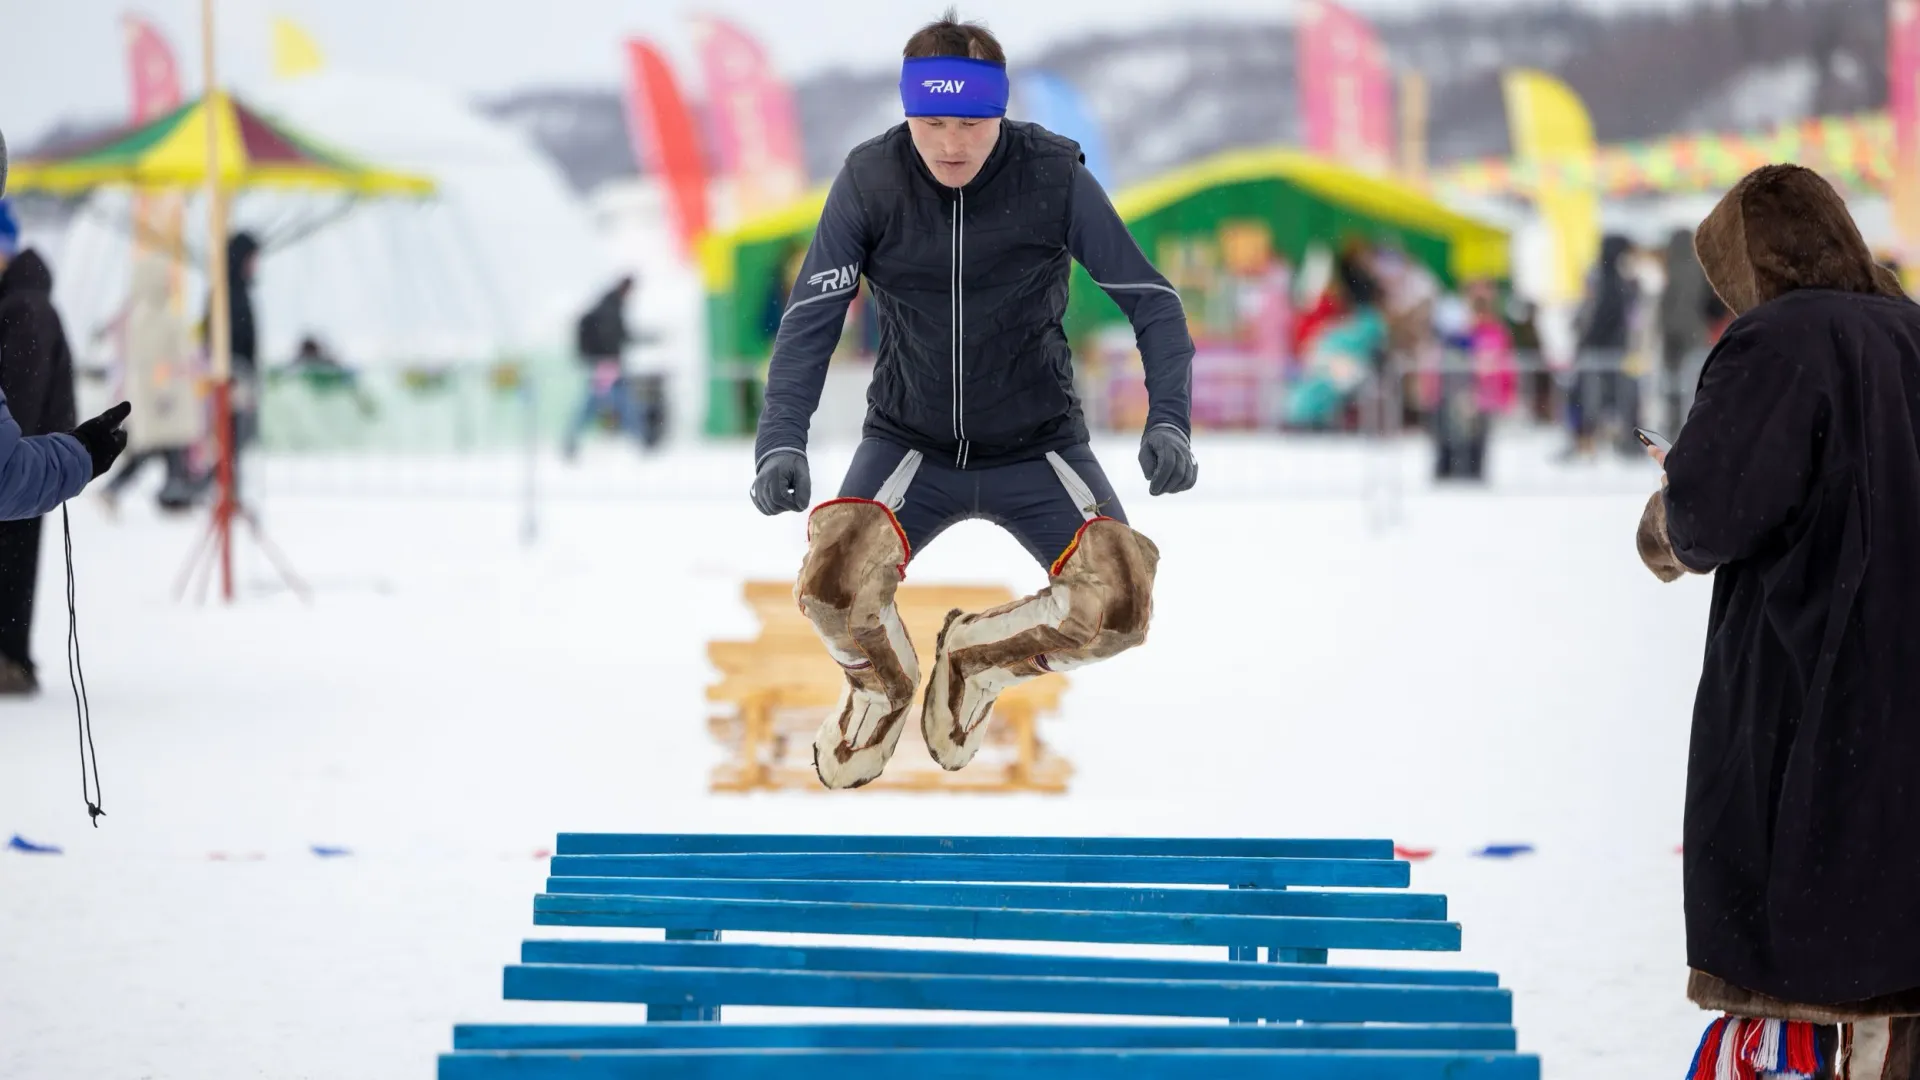 Лучшие спортсмены могут перепрыгнуть более 200 нарт. Фото: Федор Воронов / «Ямал-Медиа»